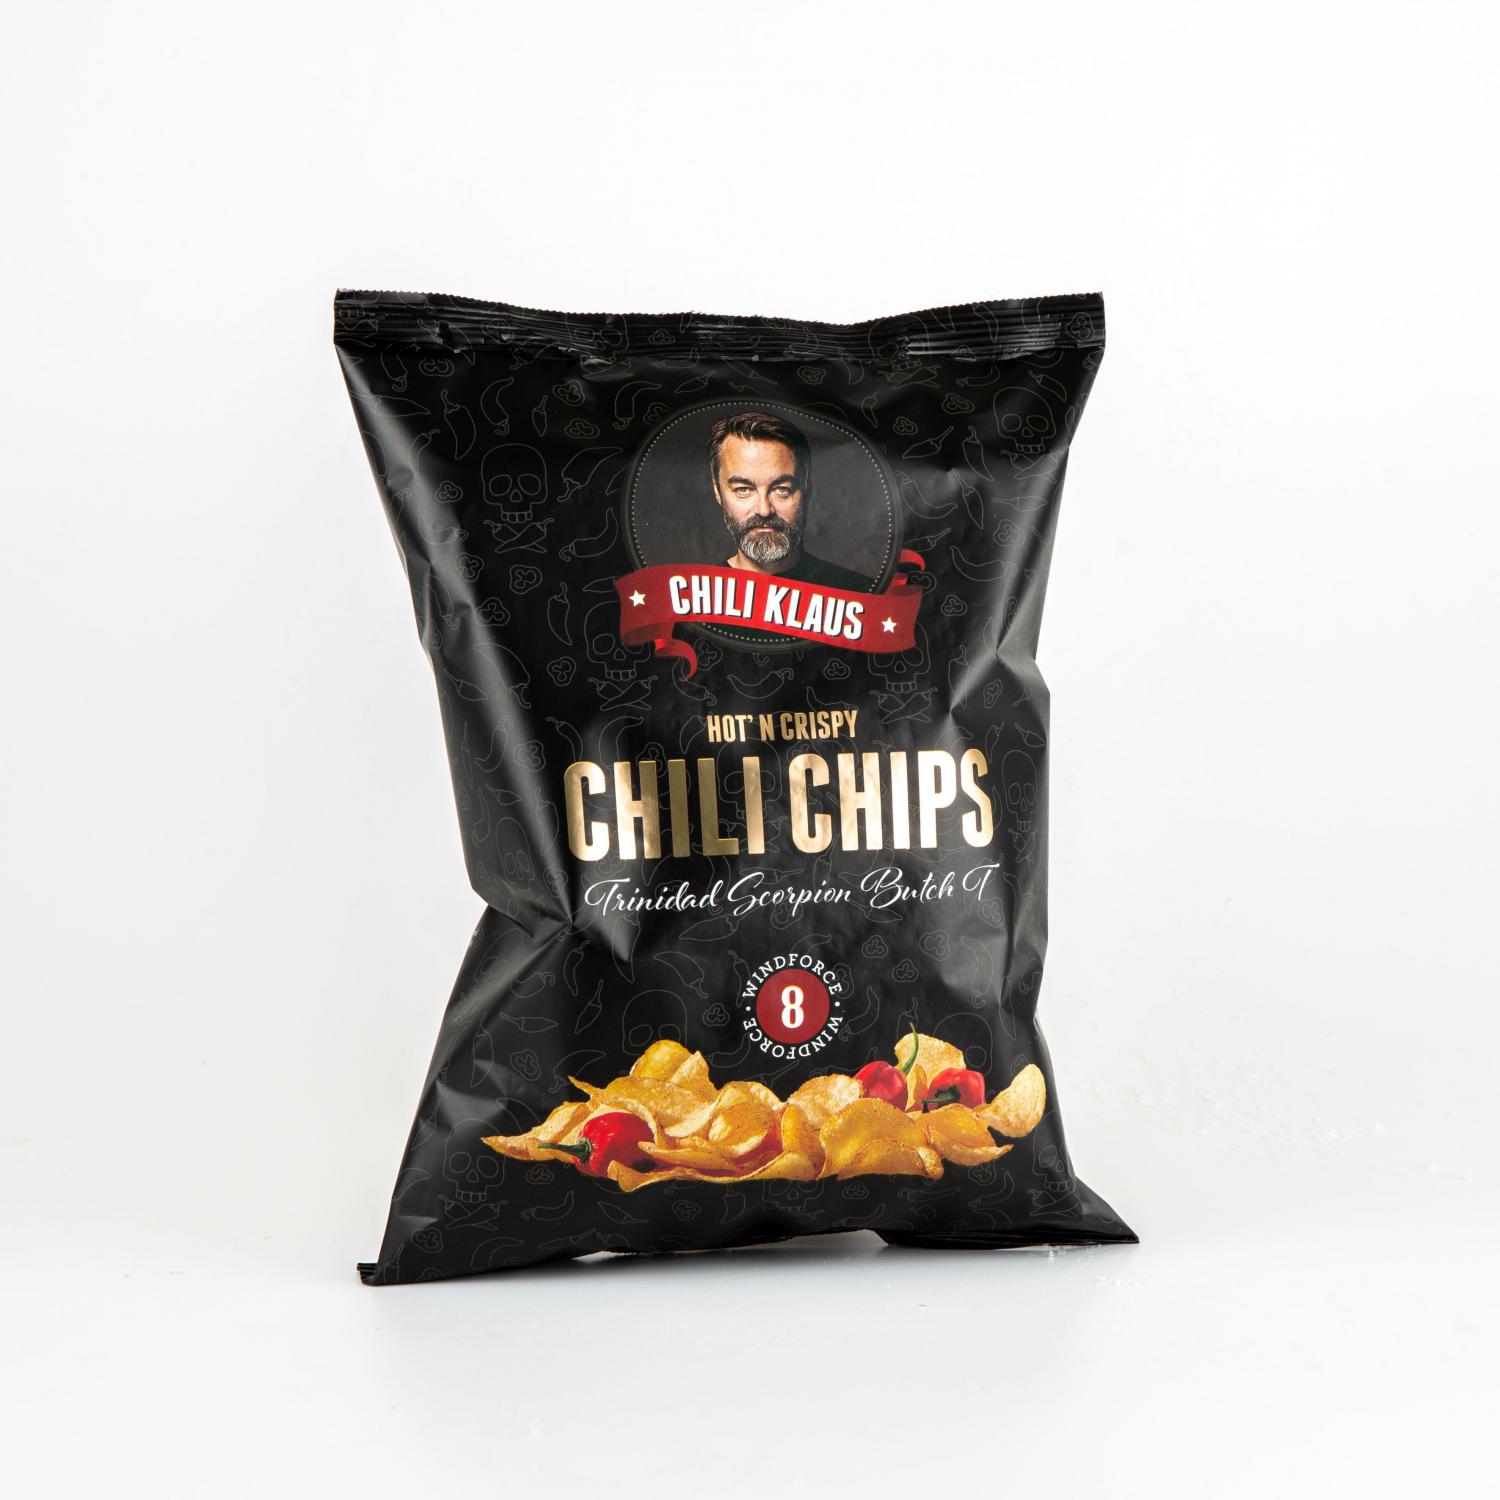 Chilli chips vindstyrke 8